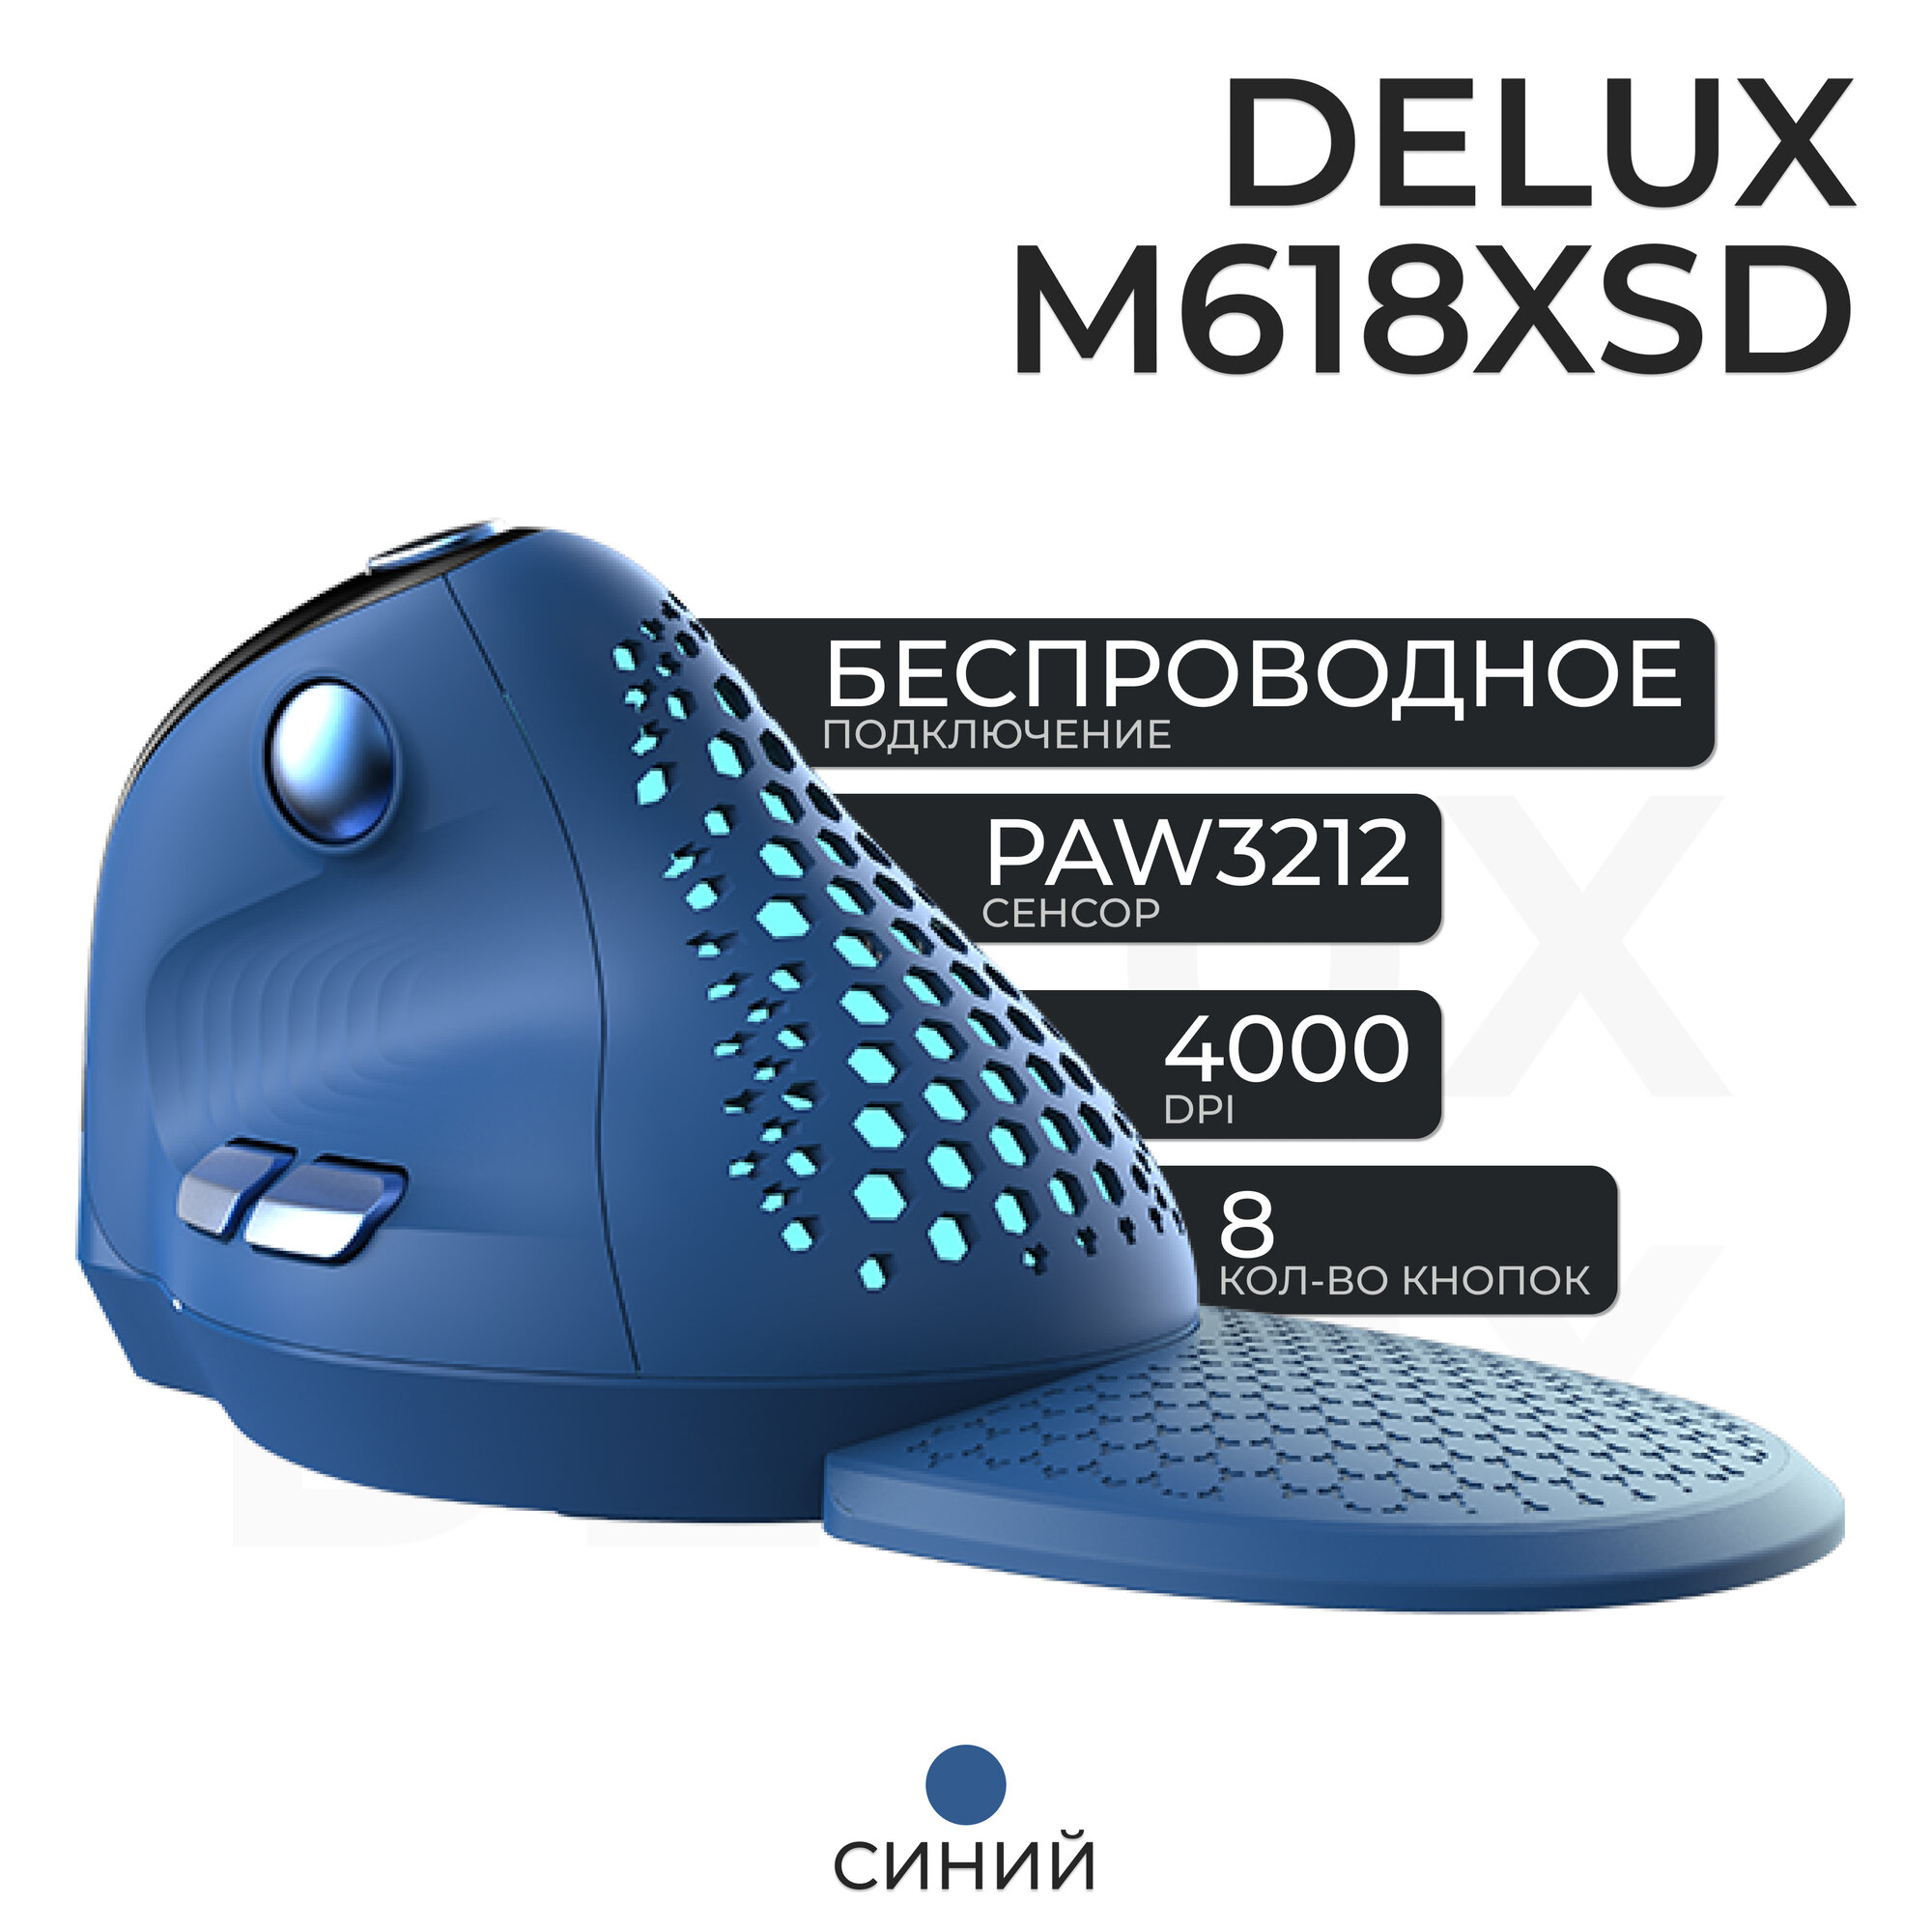 Мышь вертикальная беспроводная Delux M618XSD, синий